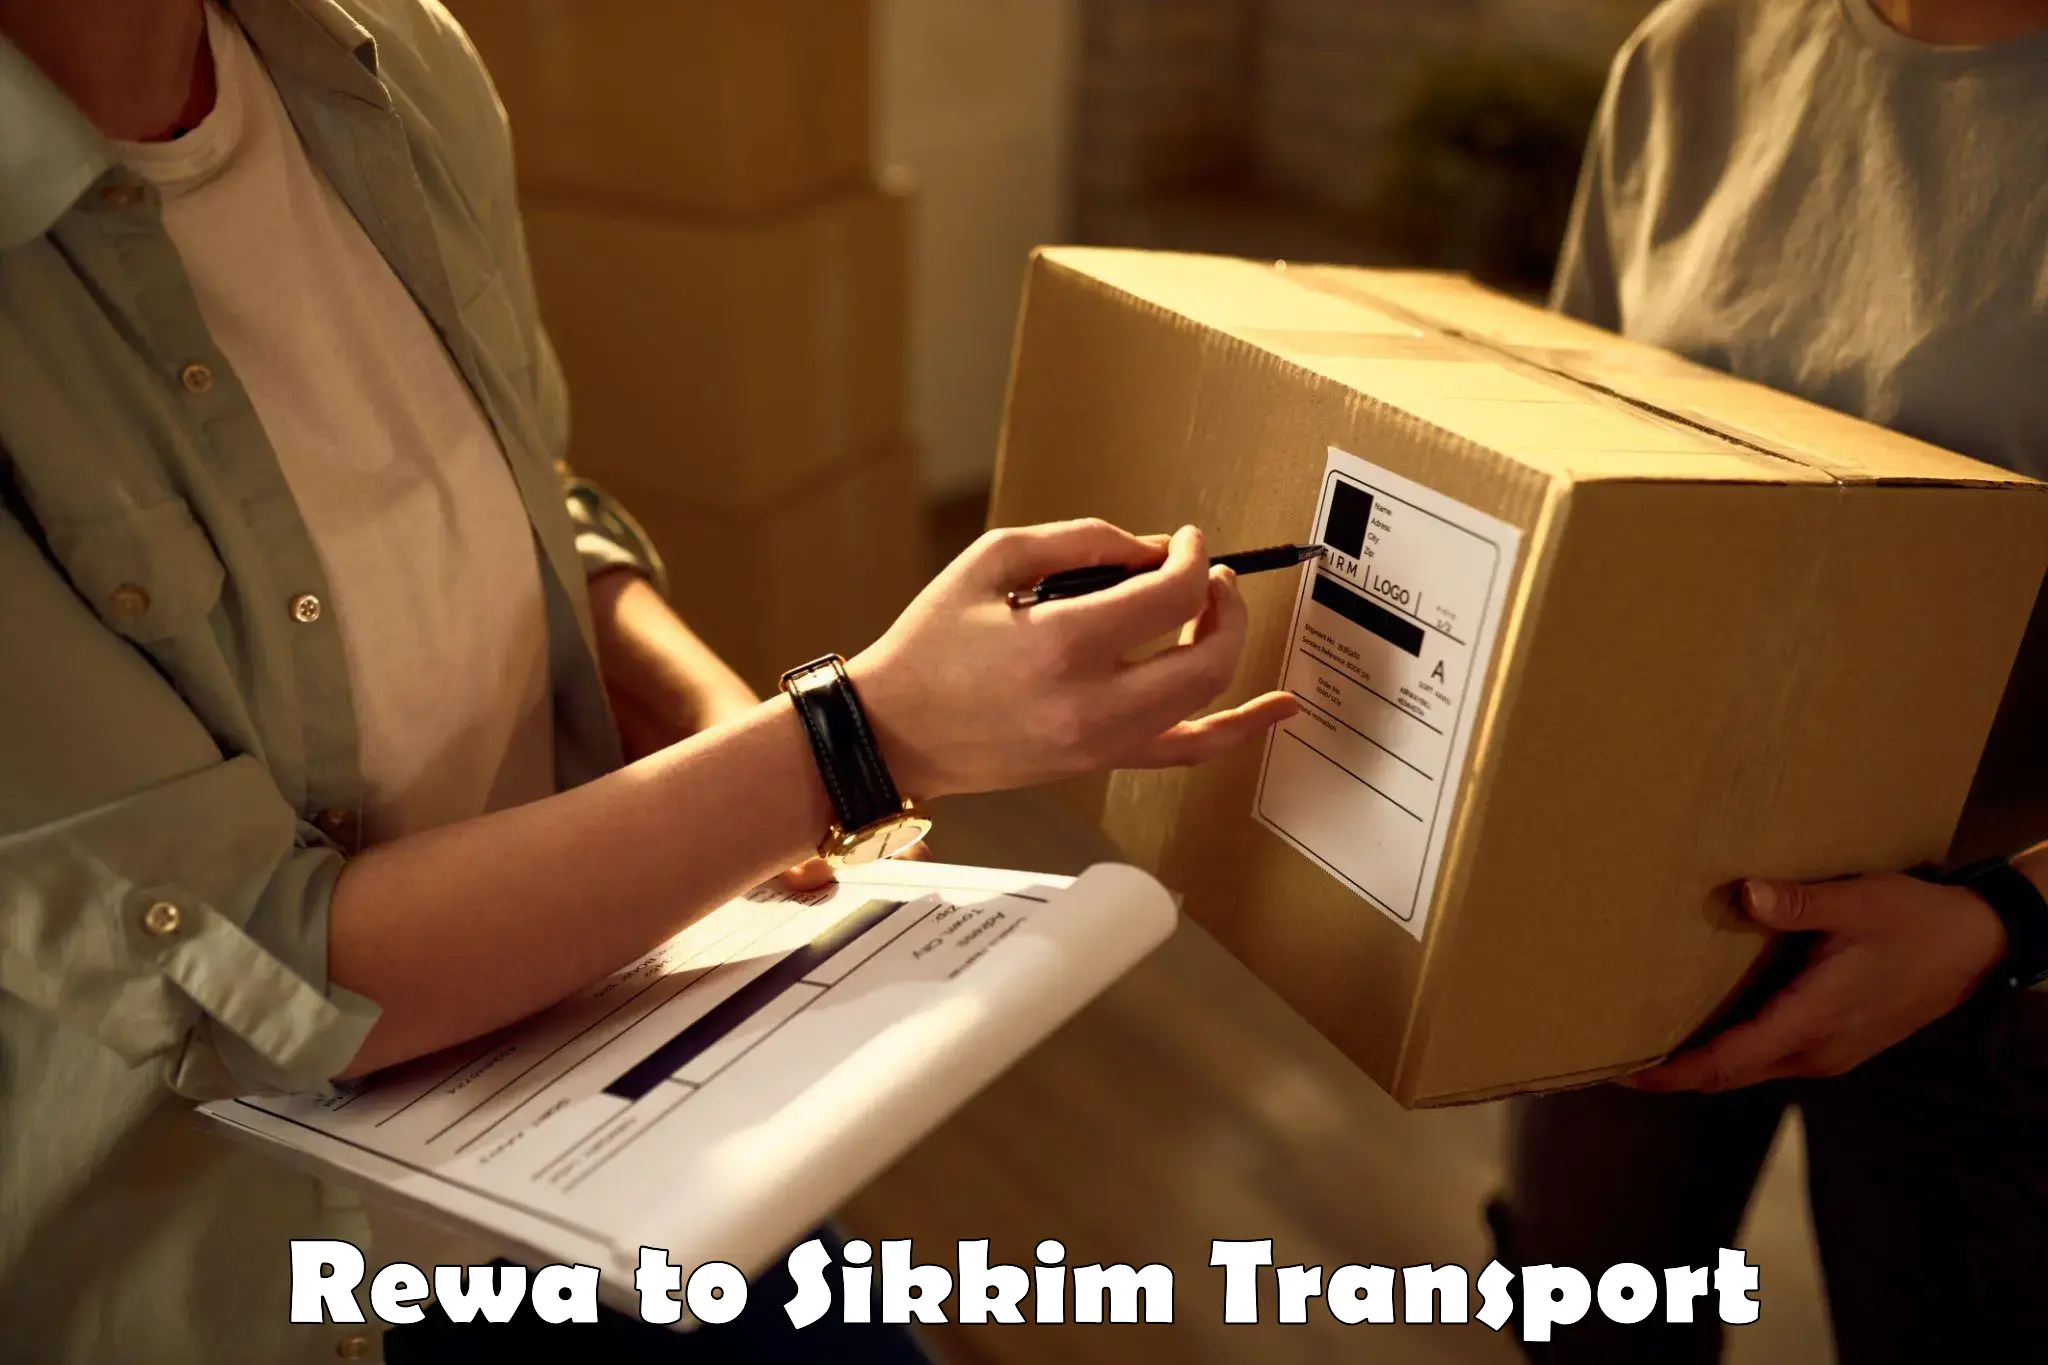 Online transport service Rewa to West Sikkim